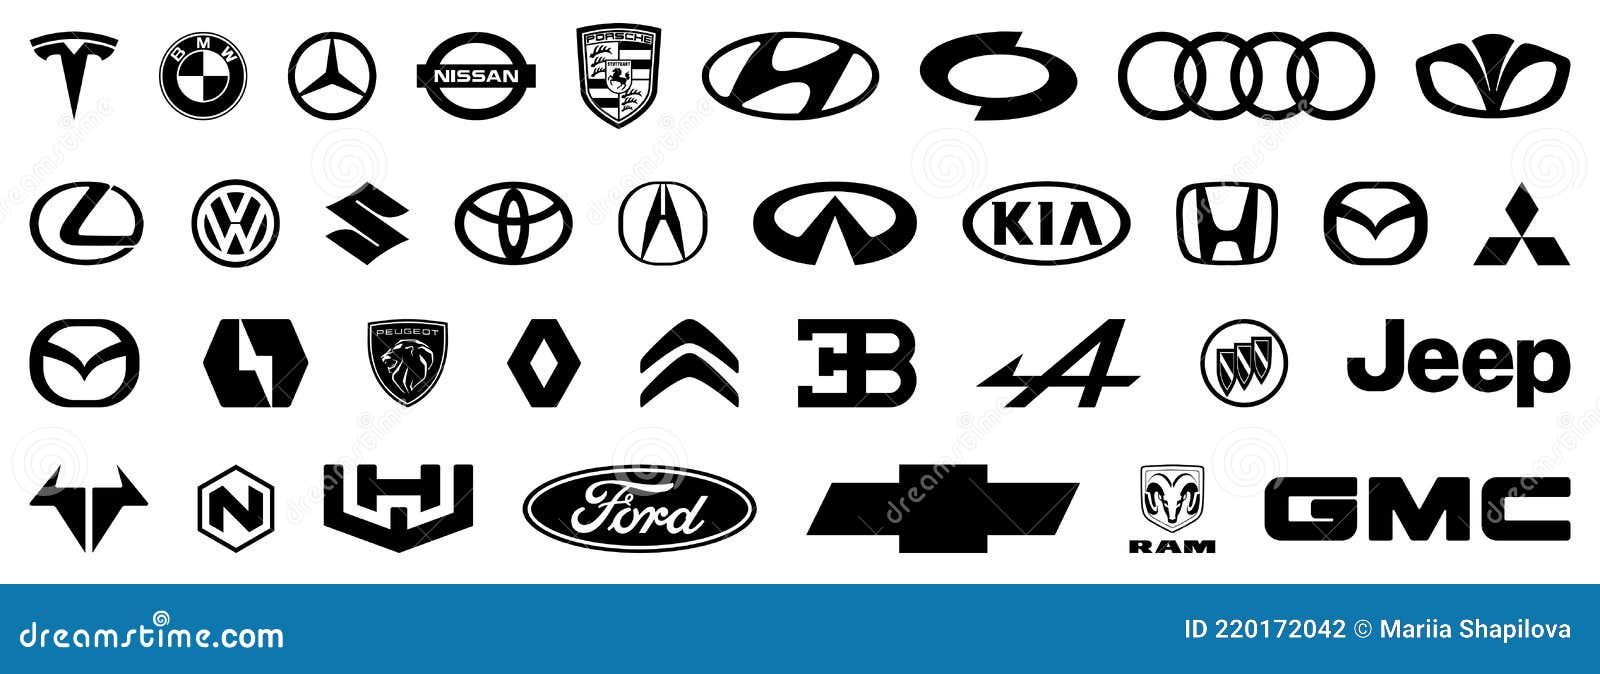 Символическое значение эмблем у автомобильных брендов Украины